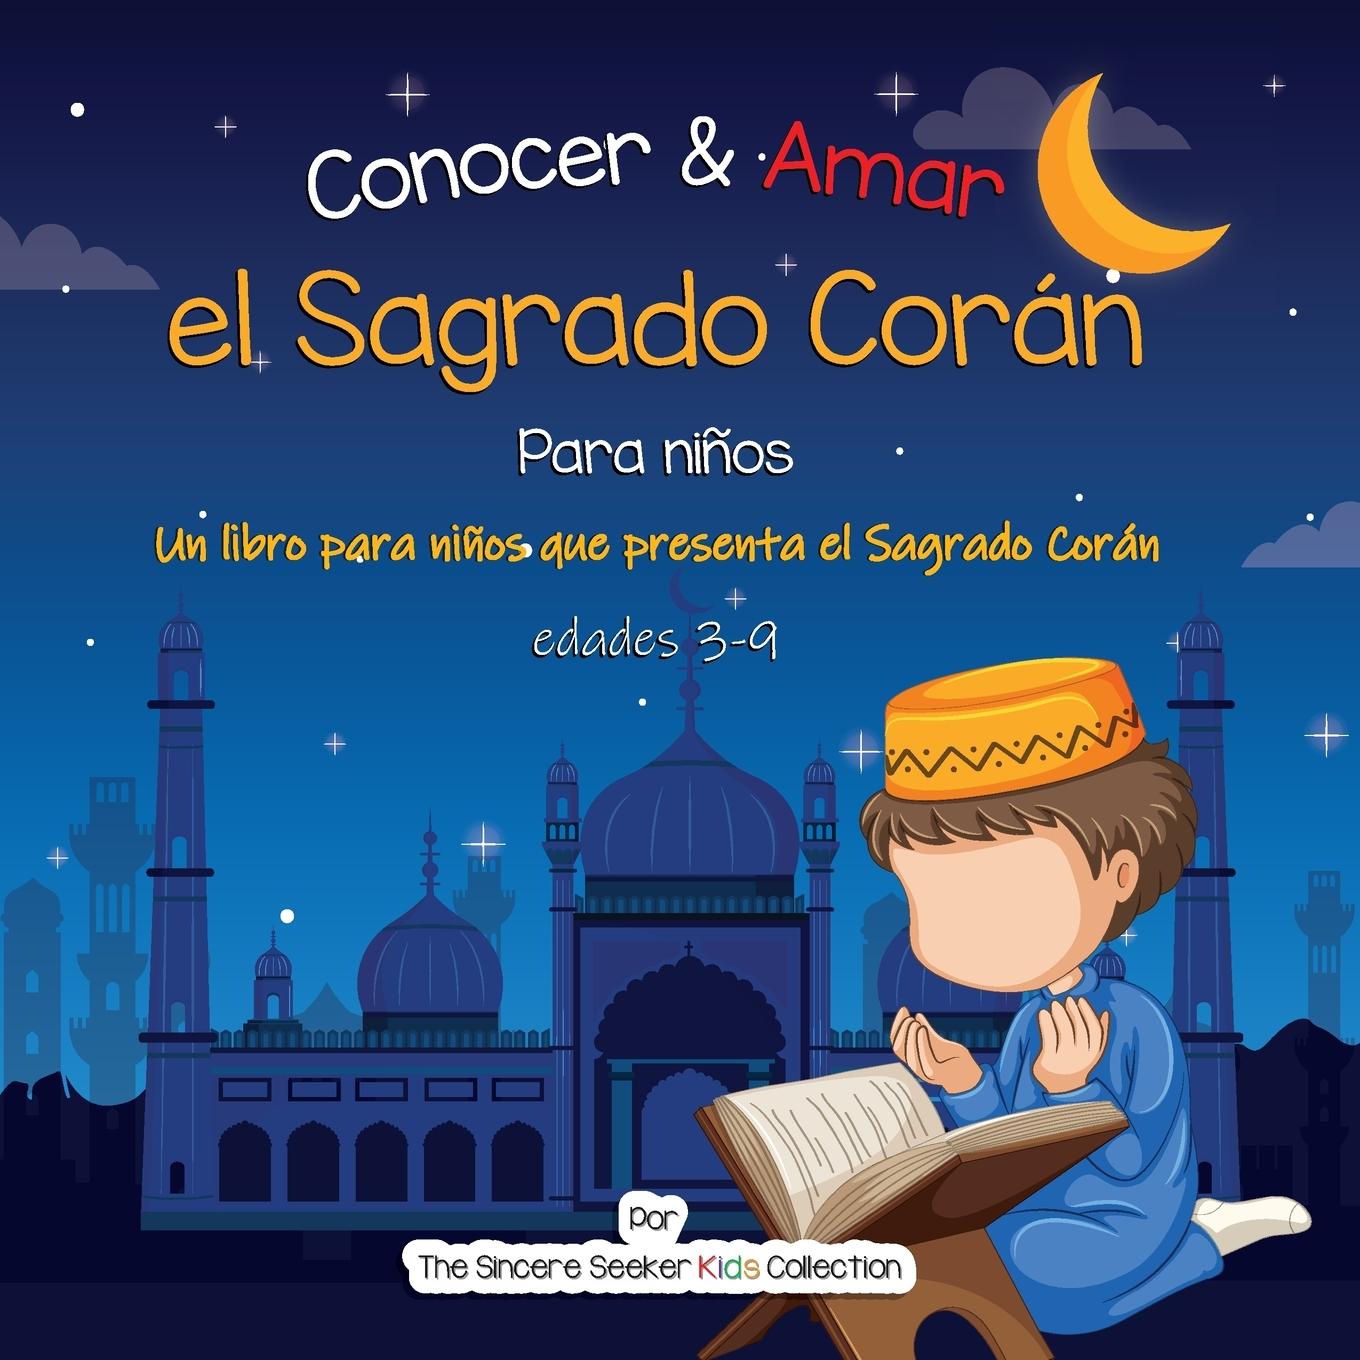 Carte Conocer & Amar el Sagrado Coran 